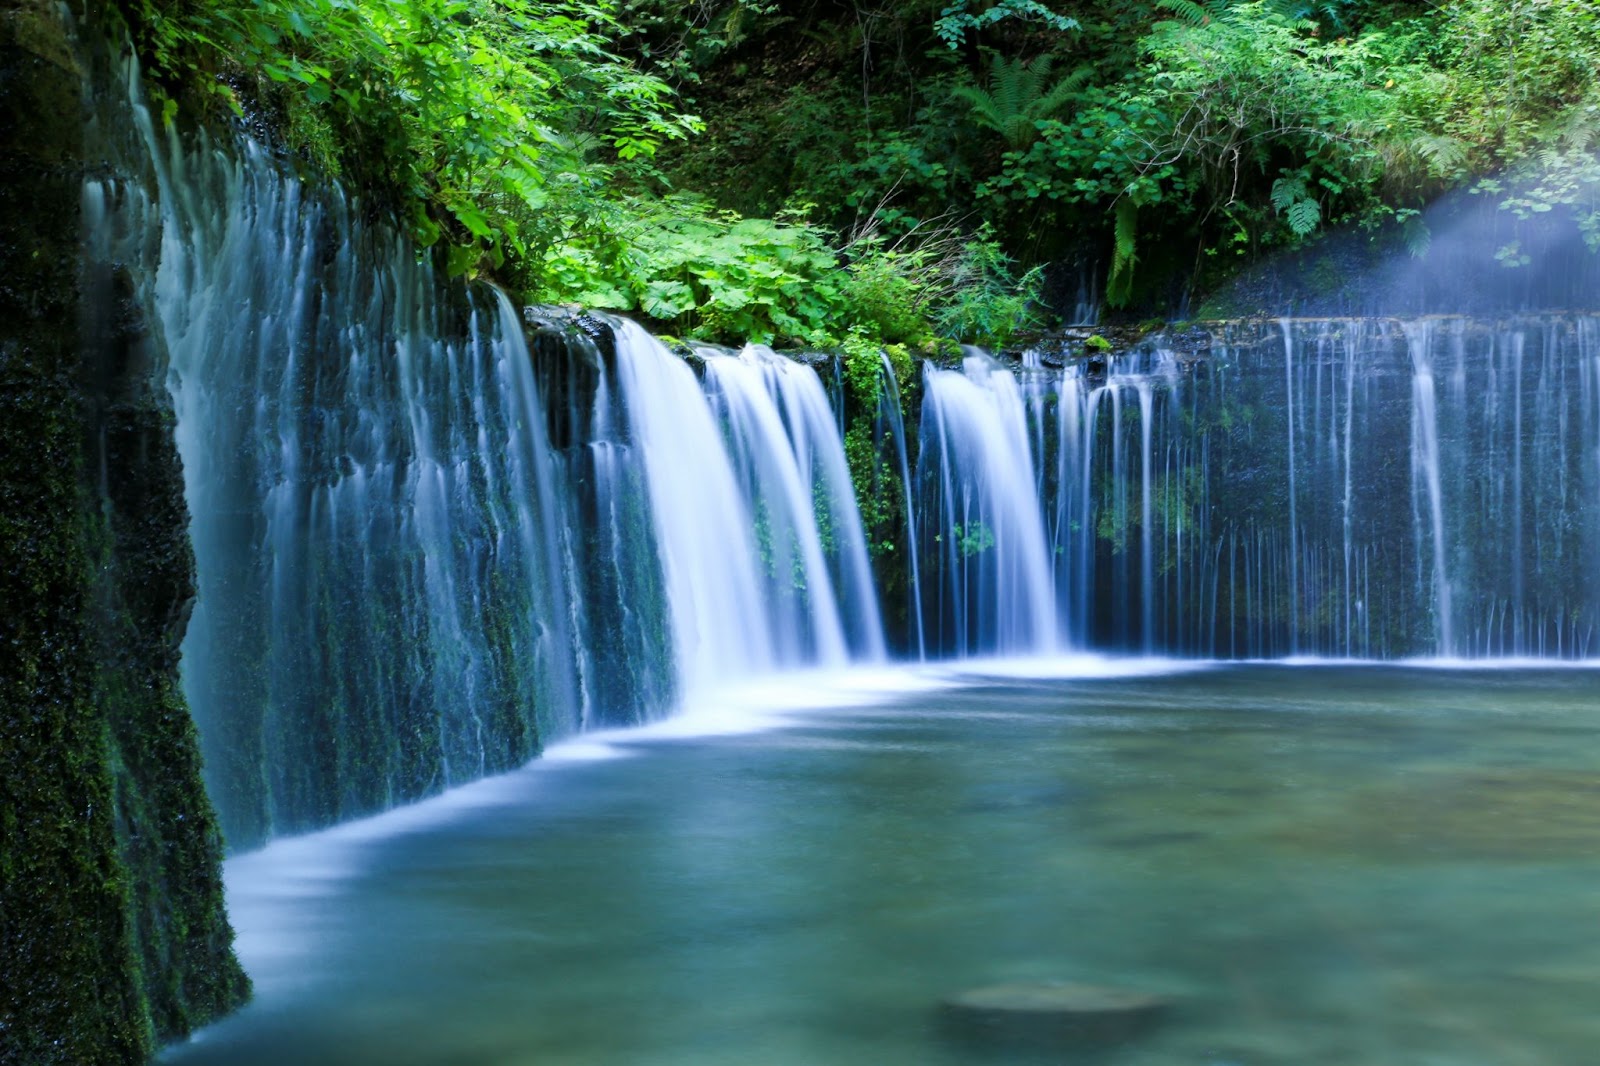 軽井沢は自然や歴史文化を感じられる癒しのリゾート